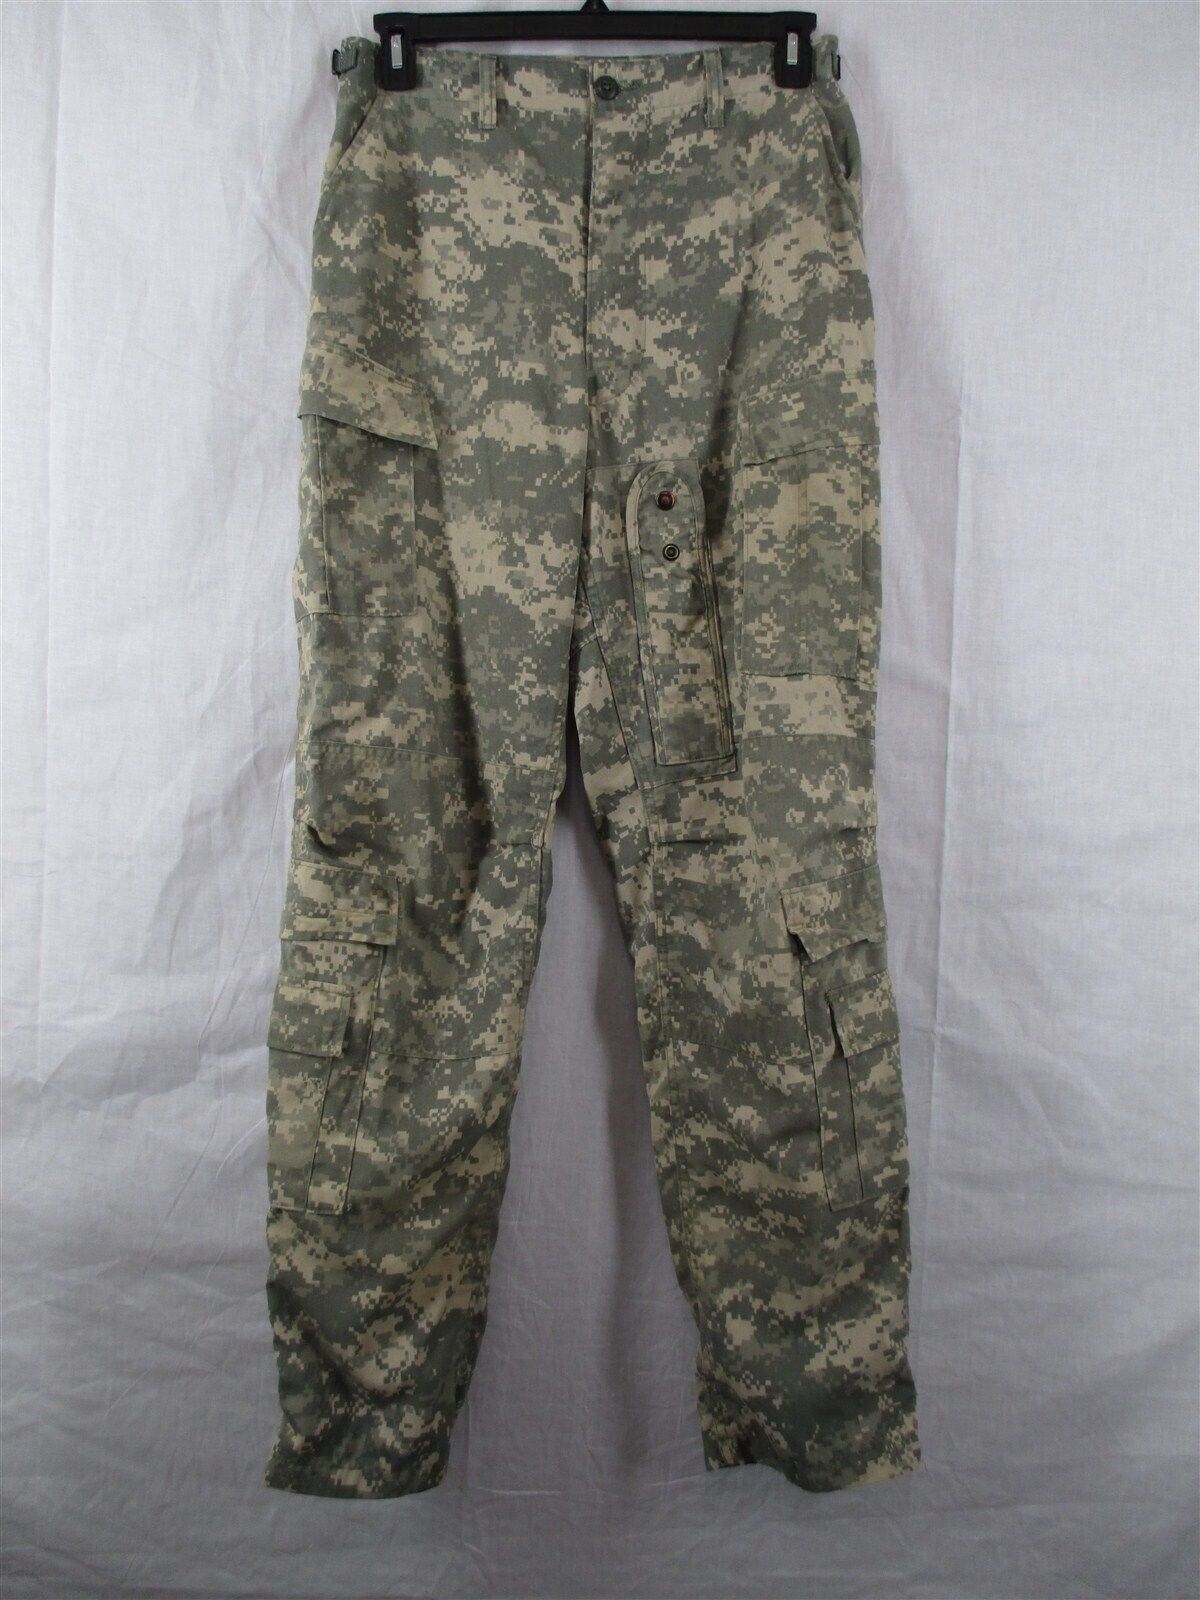 Aramid/Nomex Medium Long Army Aircrew Pants/Trousers Digital Camo A2CU ACU USGI